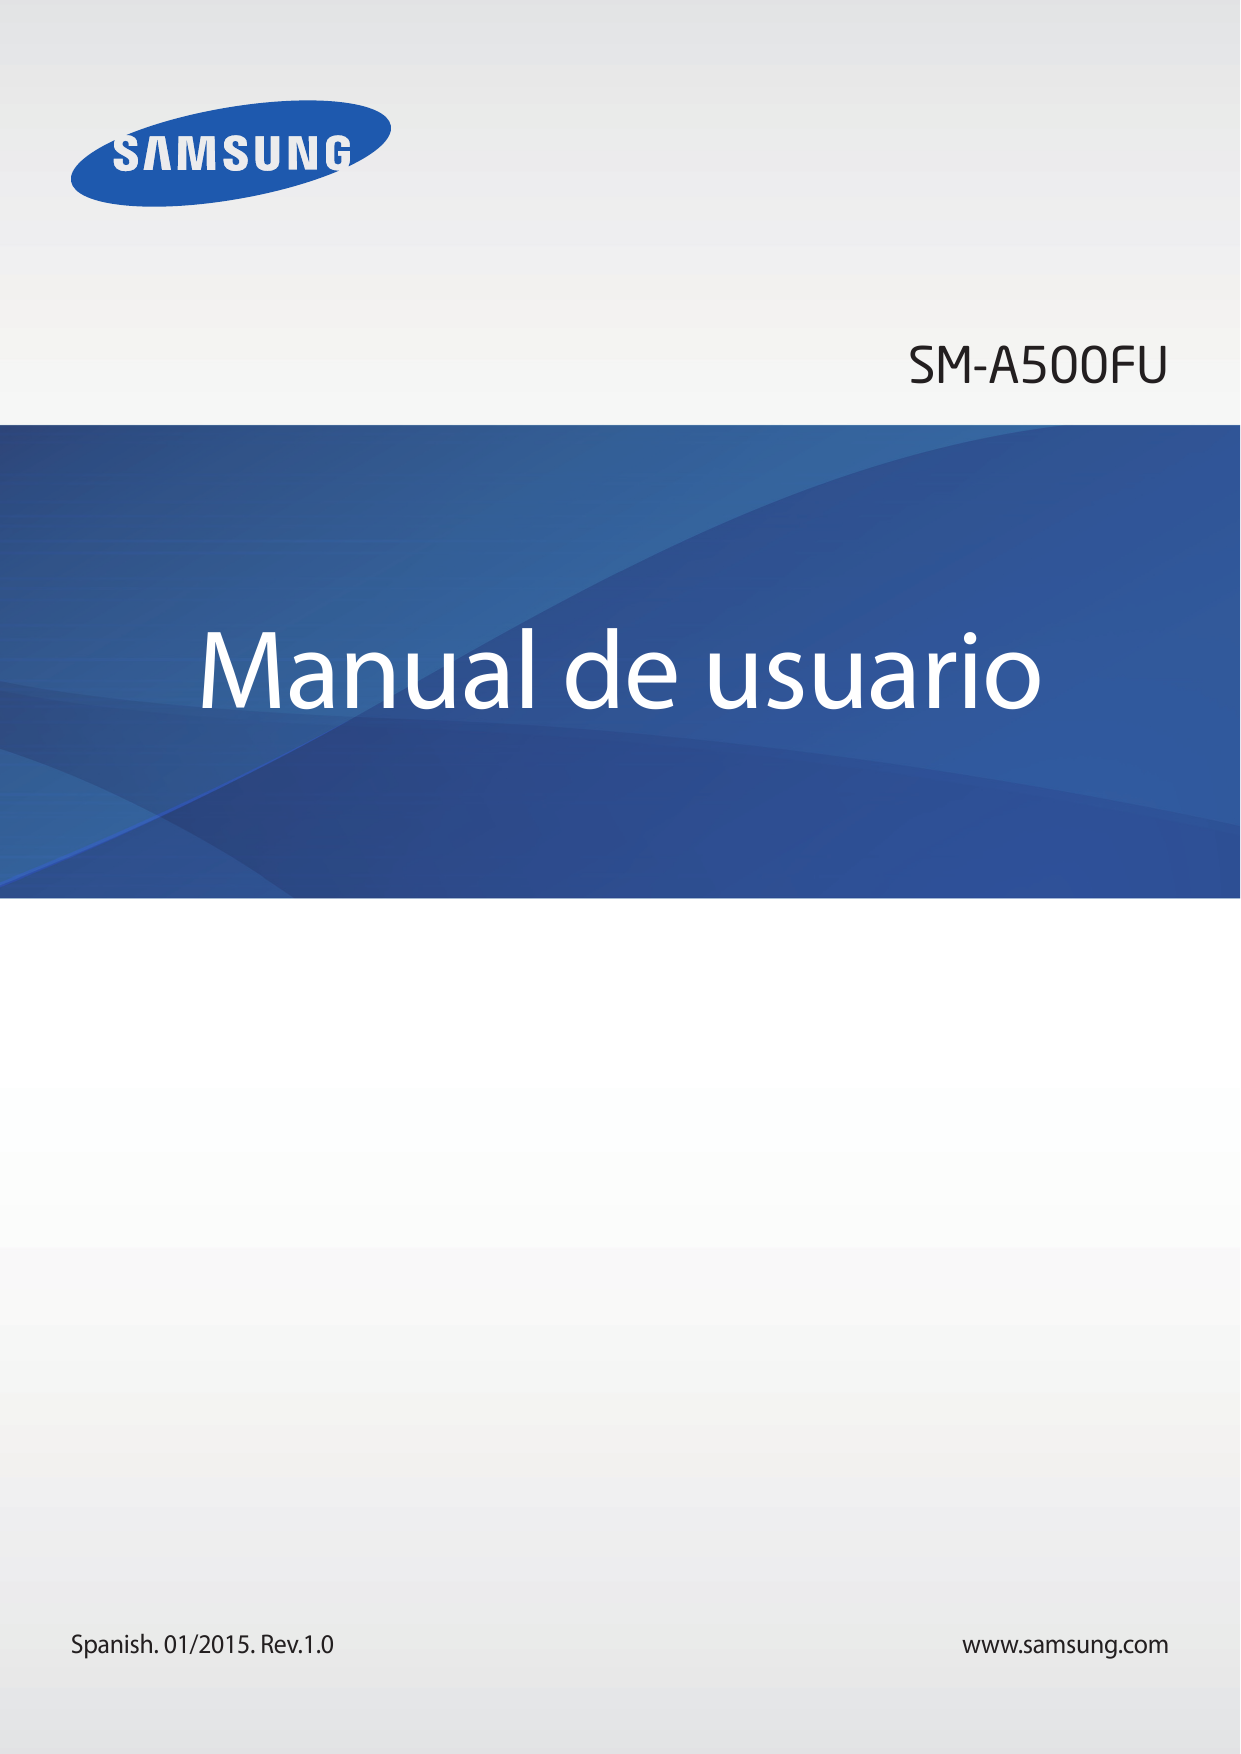 SM-A500FUManual de usuarioSpanish. 01/2015. Rev.1.0www.samsung.com